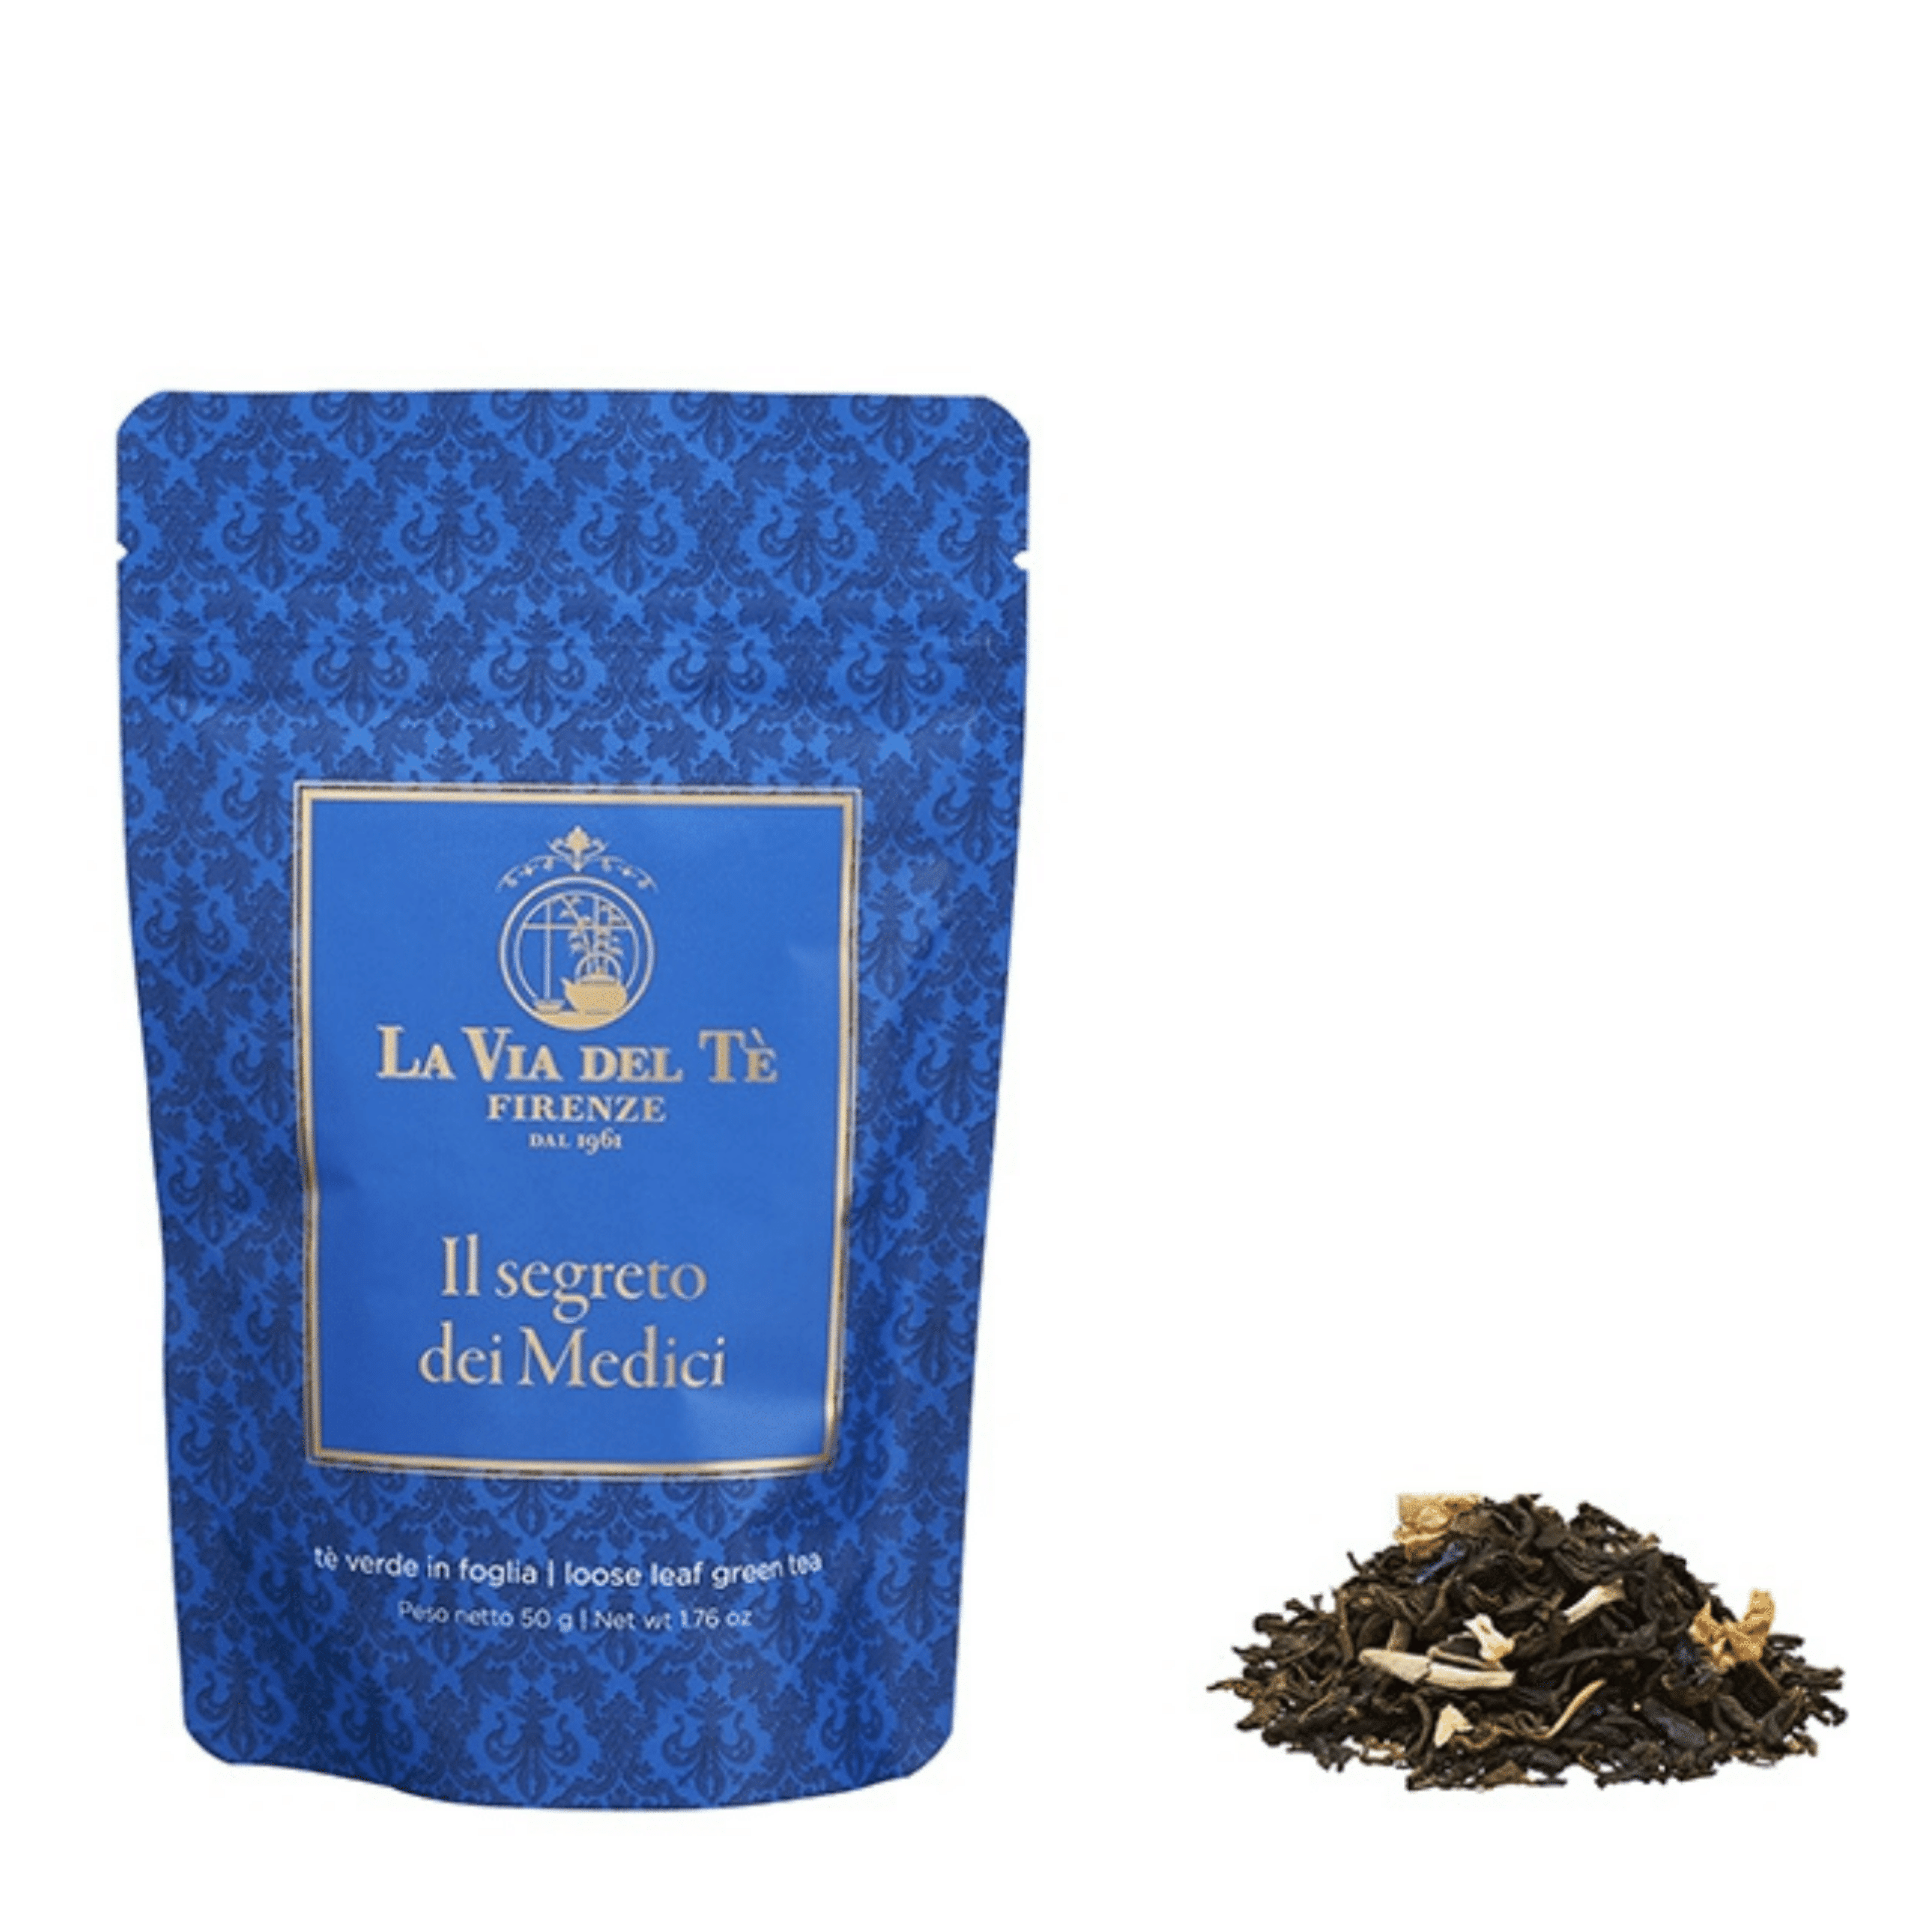 Tasty Ribbon "Il Segreto dei Medici" Tea